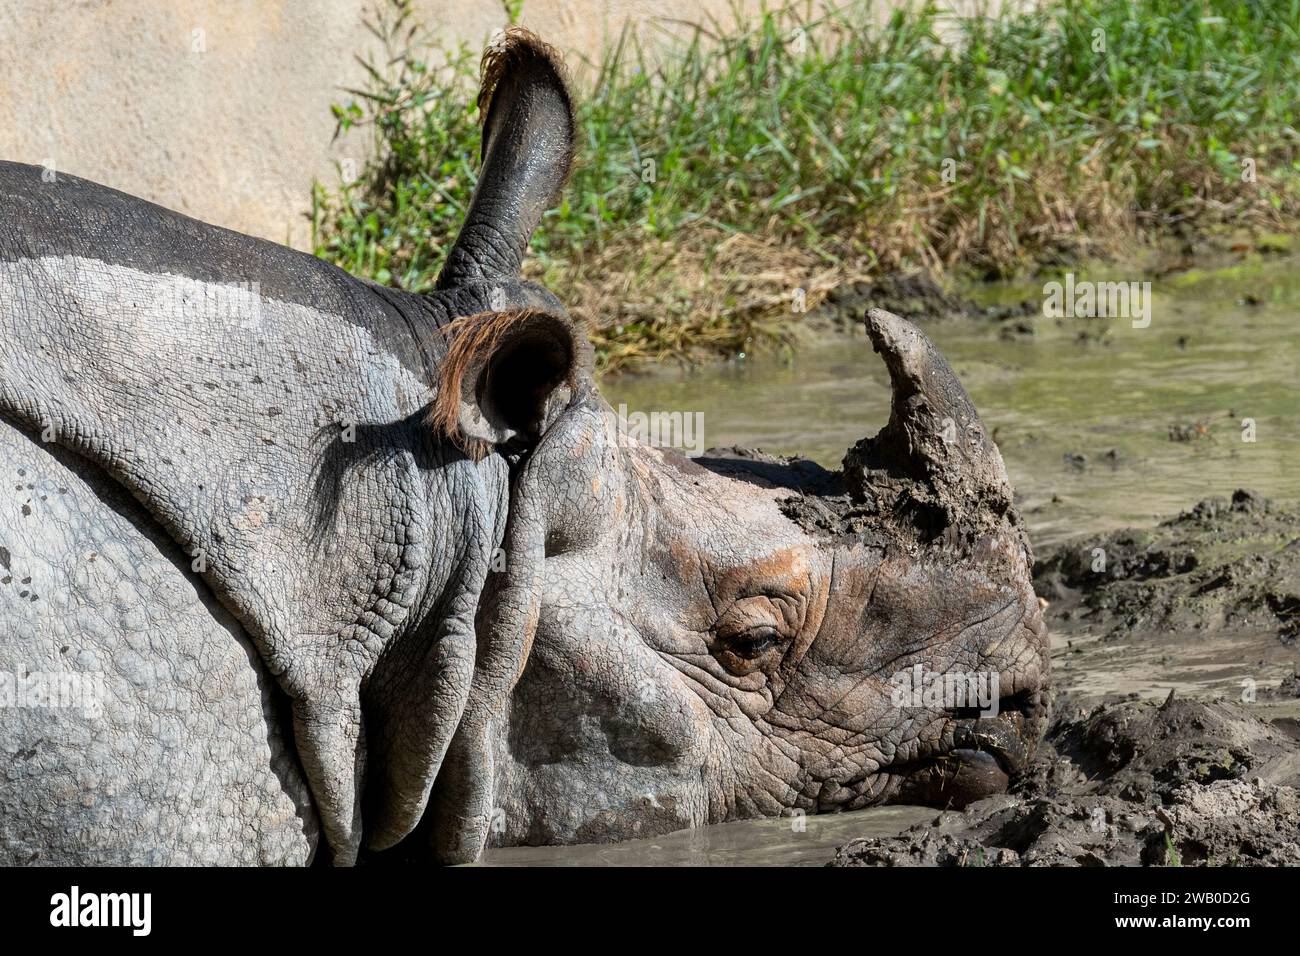 Un grand rhinocéros à une corne ou rhinocéros indien couché dans de la boue sale. Le grand mammifère du zoo a une corne noire, une peau épaisse grise avec des plis et une peau rugueuse Banque D'Images